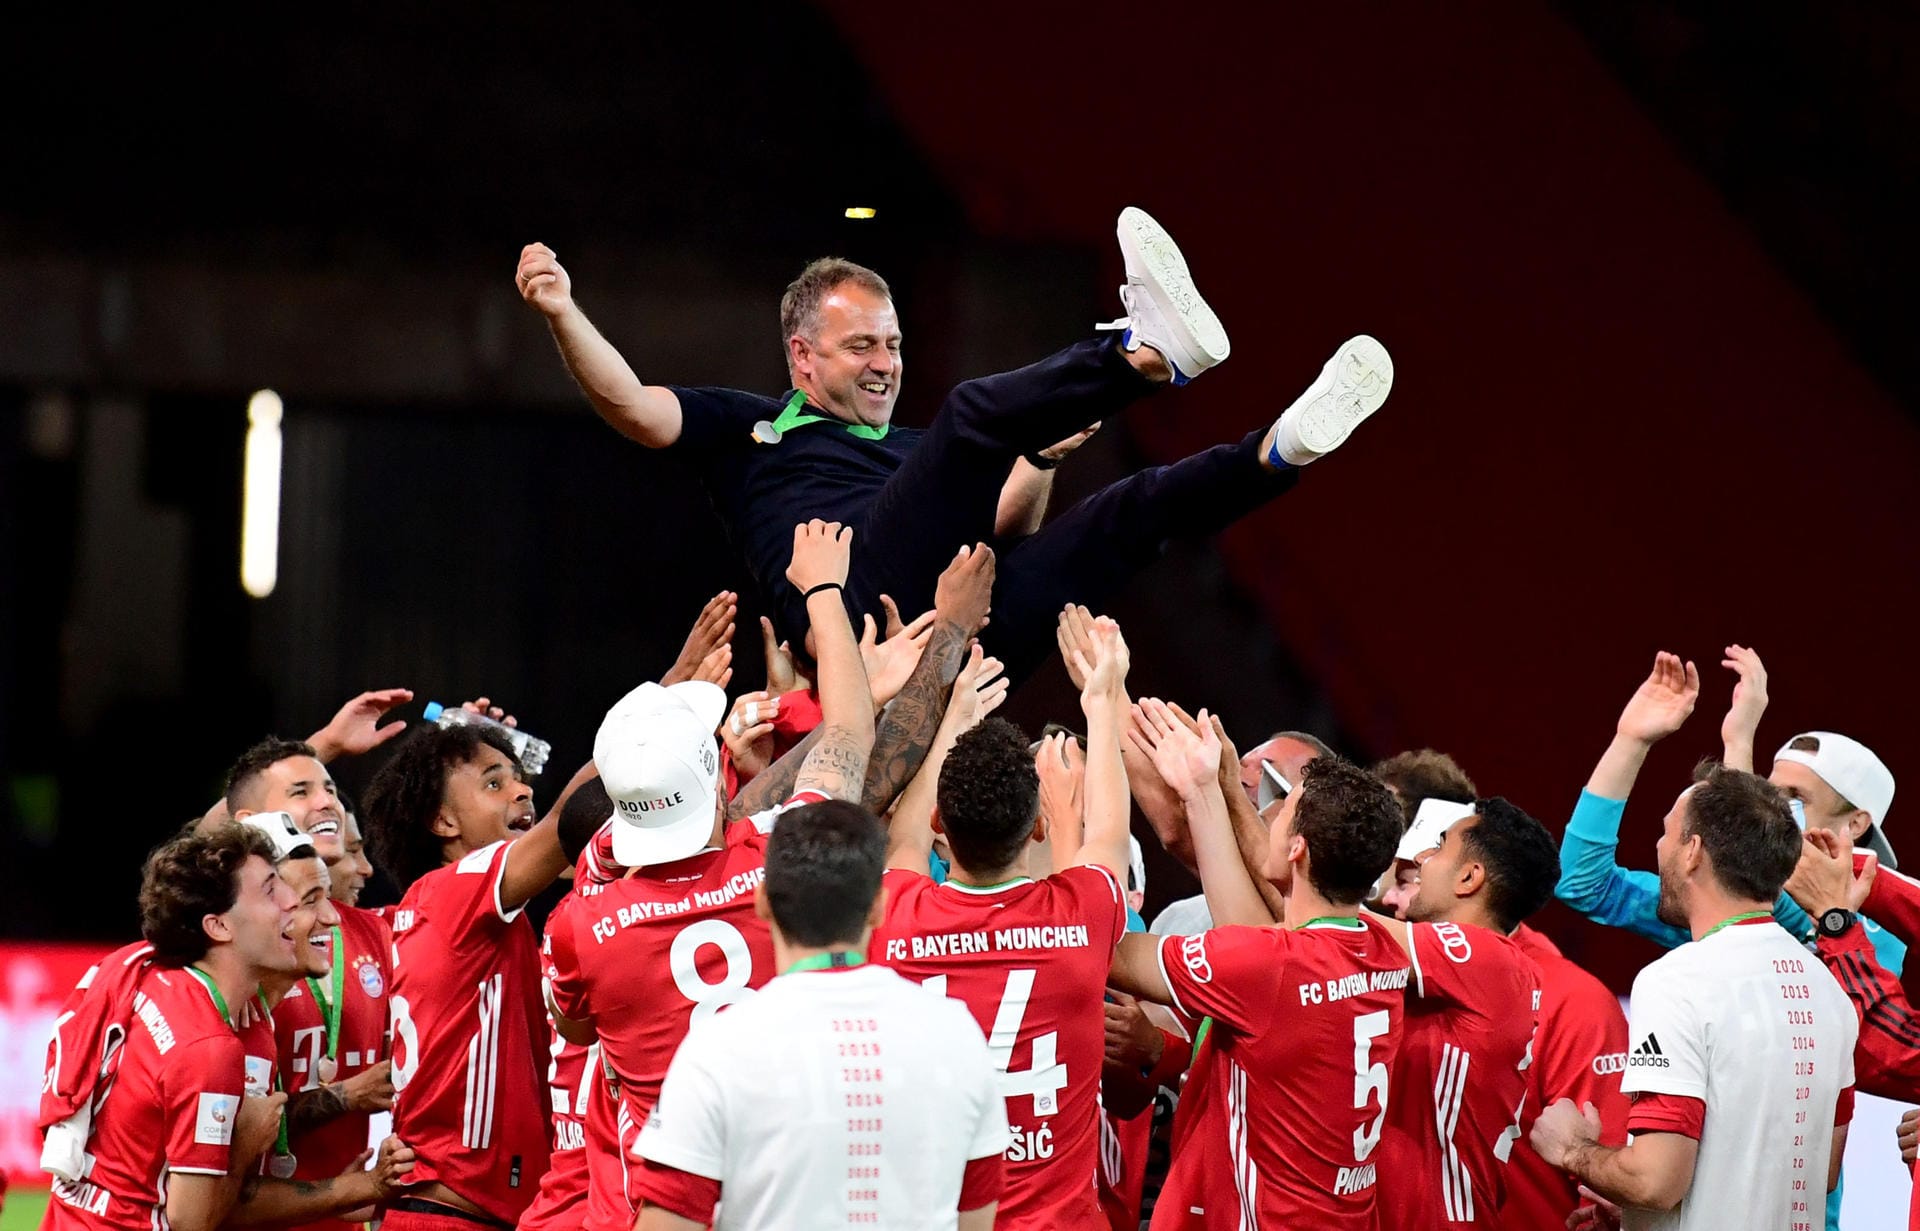 Der FC Bayern München ist DFB-Pokalsieger 2020. Die Mannschaft von Trainer Hansi Flick (o.) gewann gegen Bayer Leverkusen ihren 20. Pokal. t-online.de hat die schönsten Feierbilder zusammengestellt.